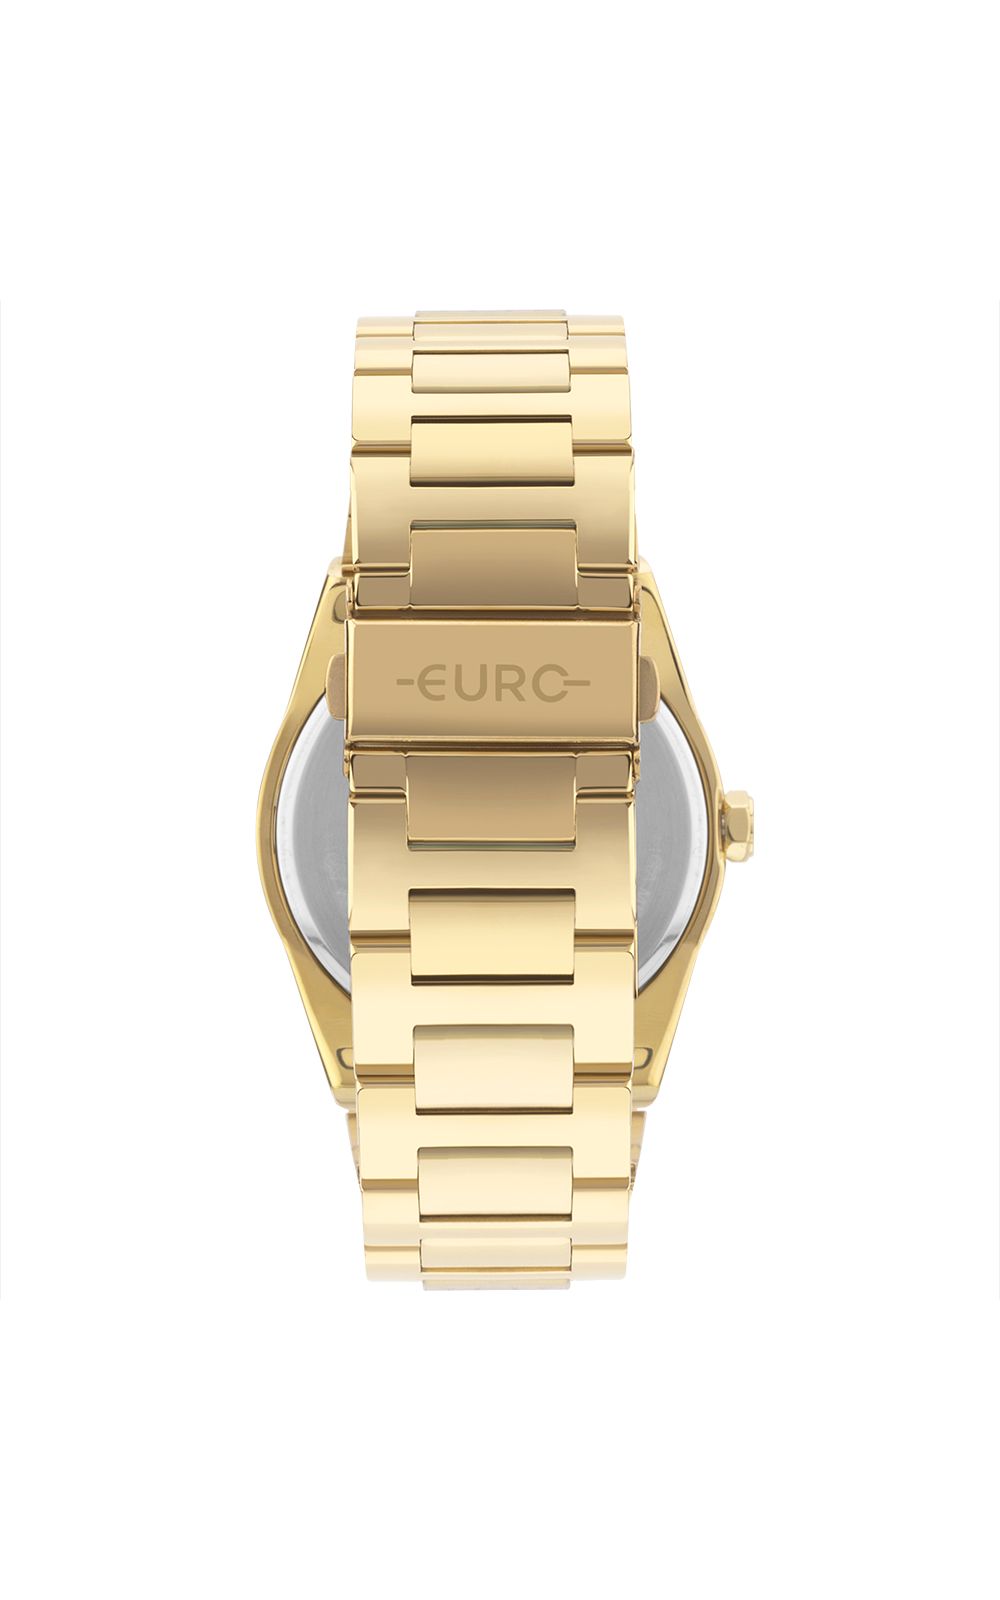 Foto 3 - Relógio Euro Feminino Glitz Dourado - EU2033BE/4D